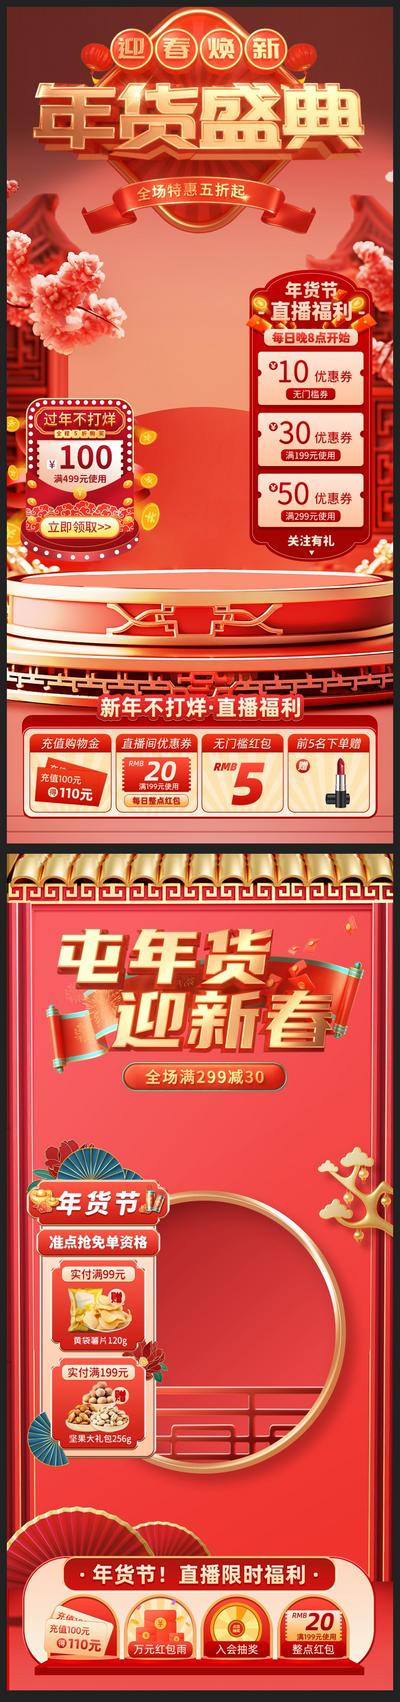 南门网 海报 直播间 贴片 年货节 过年不打烊 新春 盛典 中国风